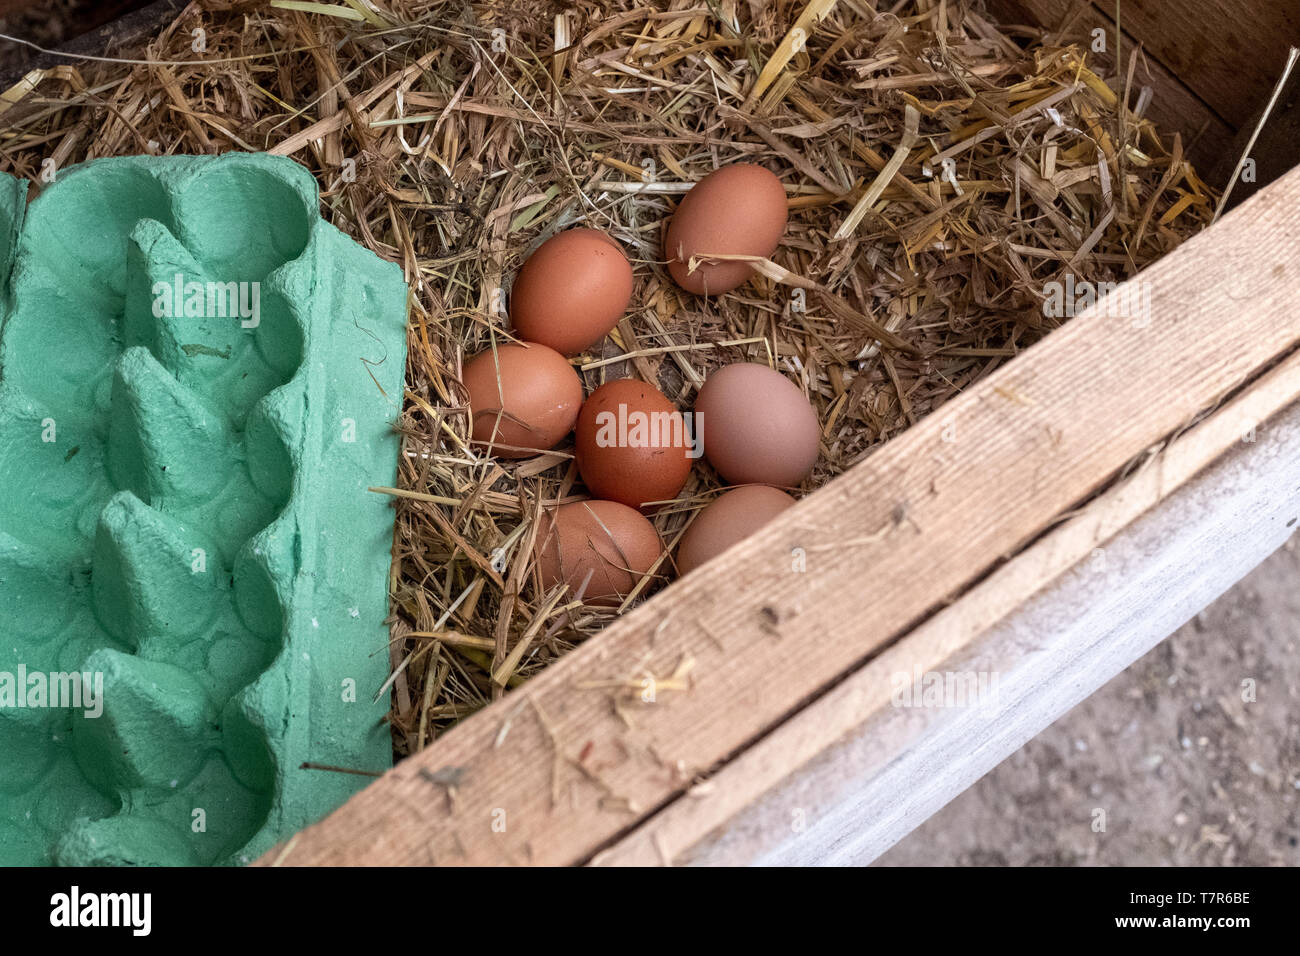 De cerca una colección de huevos de gallinas free range marrón pendientes de cobro sentado en una cama de paja con un cuadro de huevo en primer plano Foto de stock